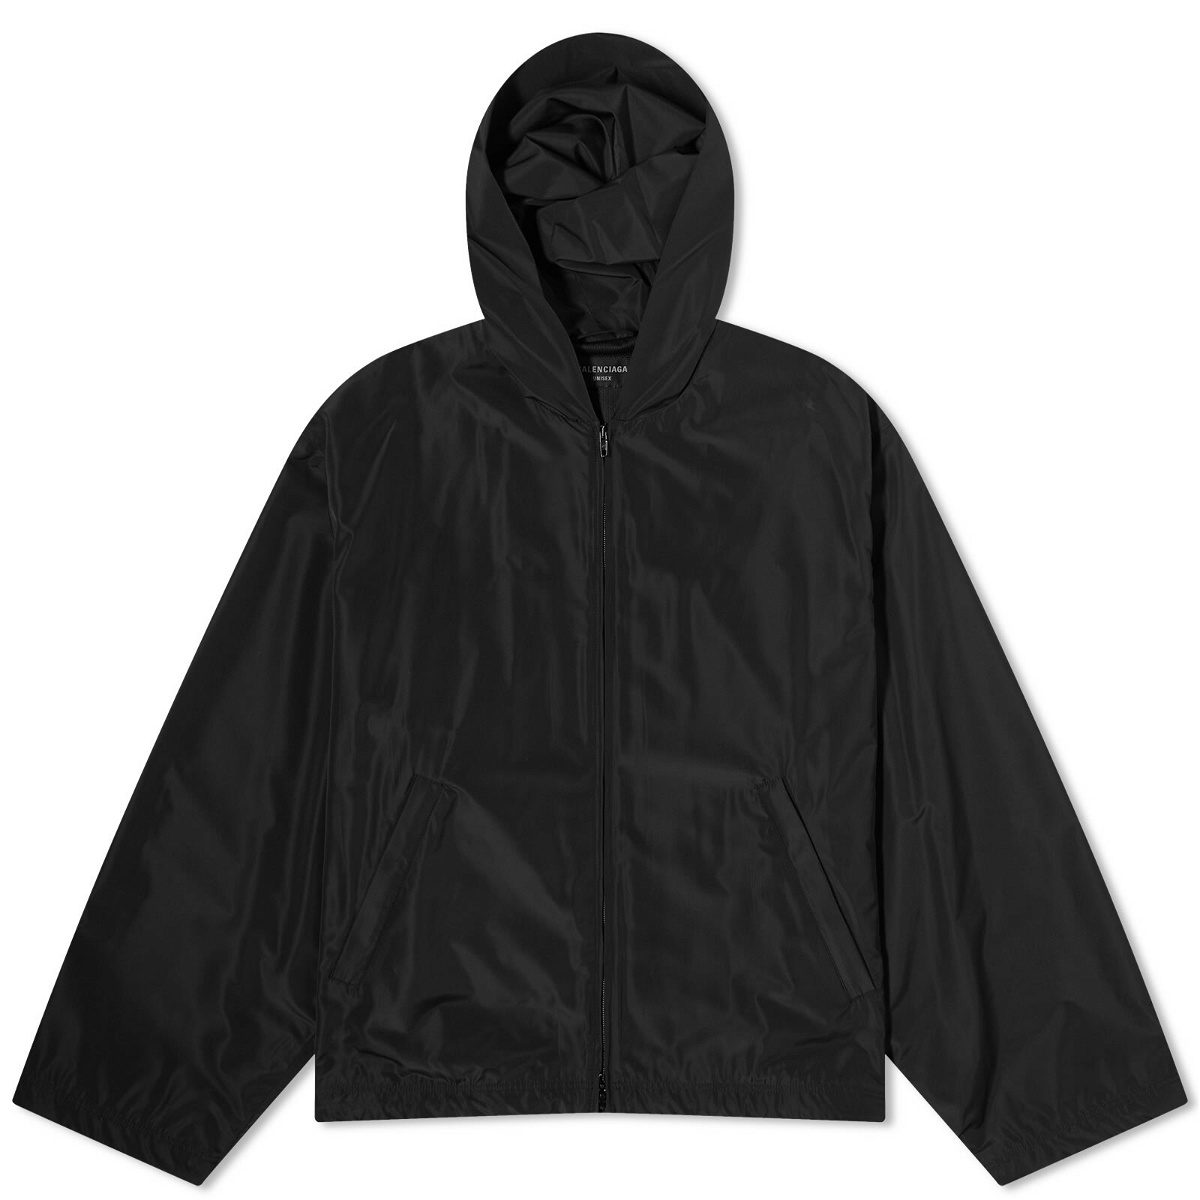 Balenciaga Men's Tracksuit Rain Jacket in Black Balenciaga